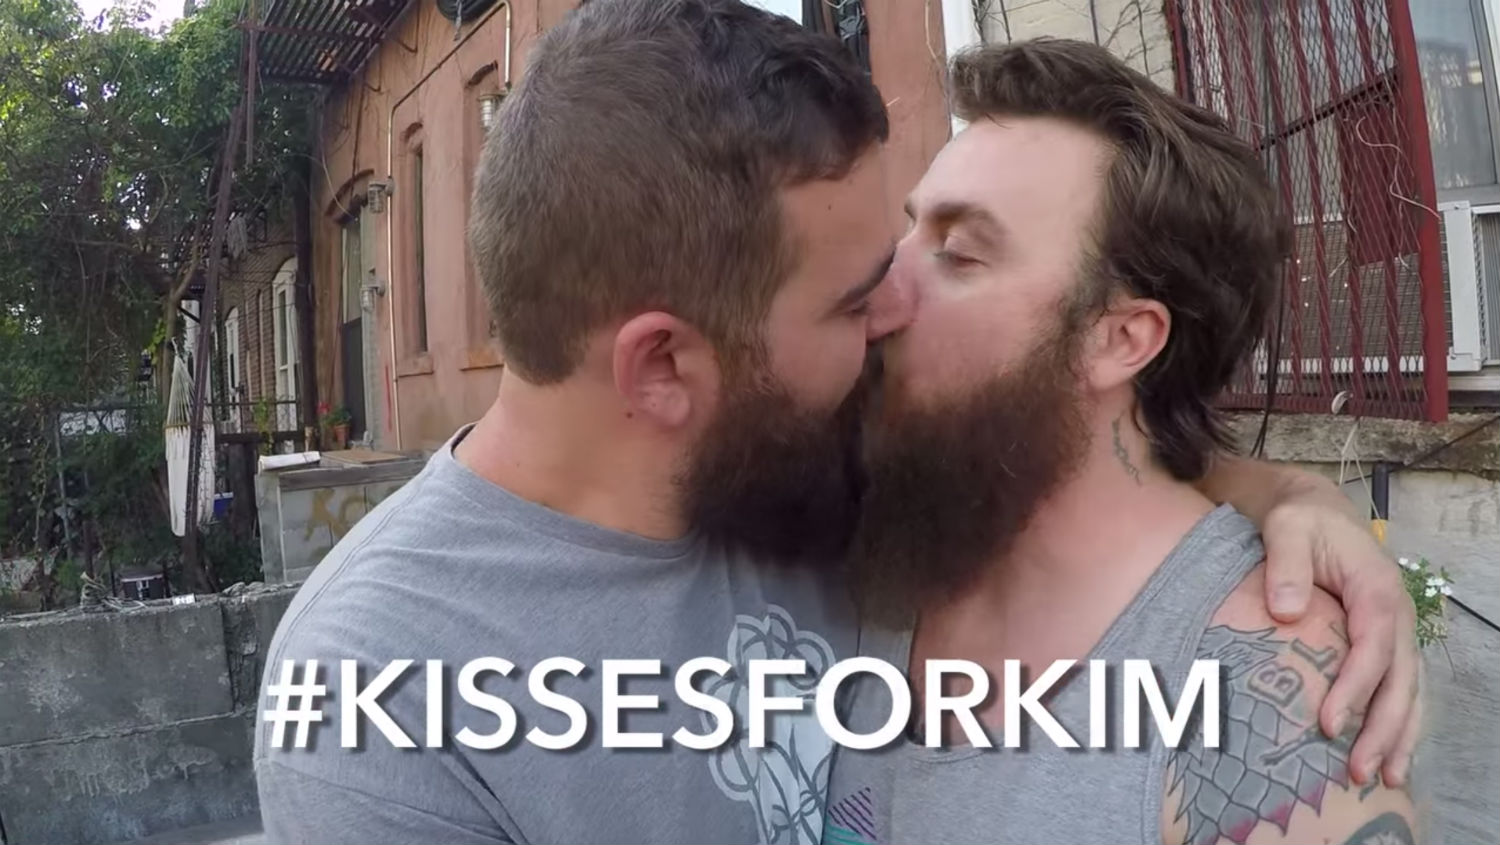 Поцелуи для Ким: двое гетеросексуалов запустили в сети антигомофобный  флэшмоб (ВИДЕО) - Гей-альянс Украина